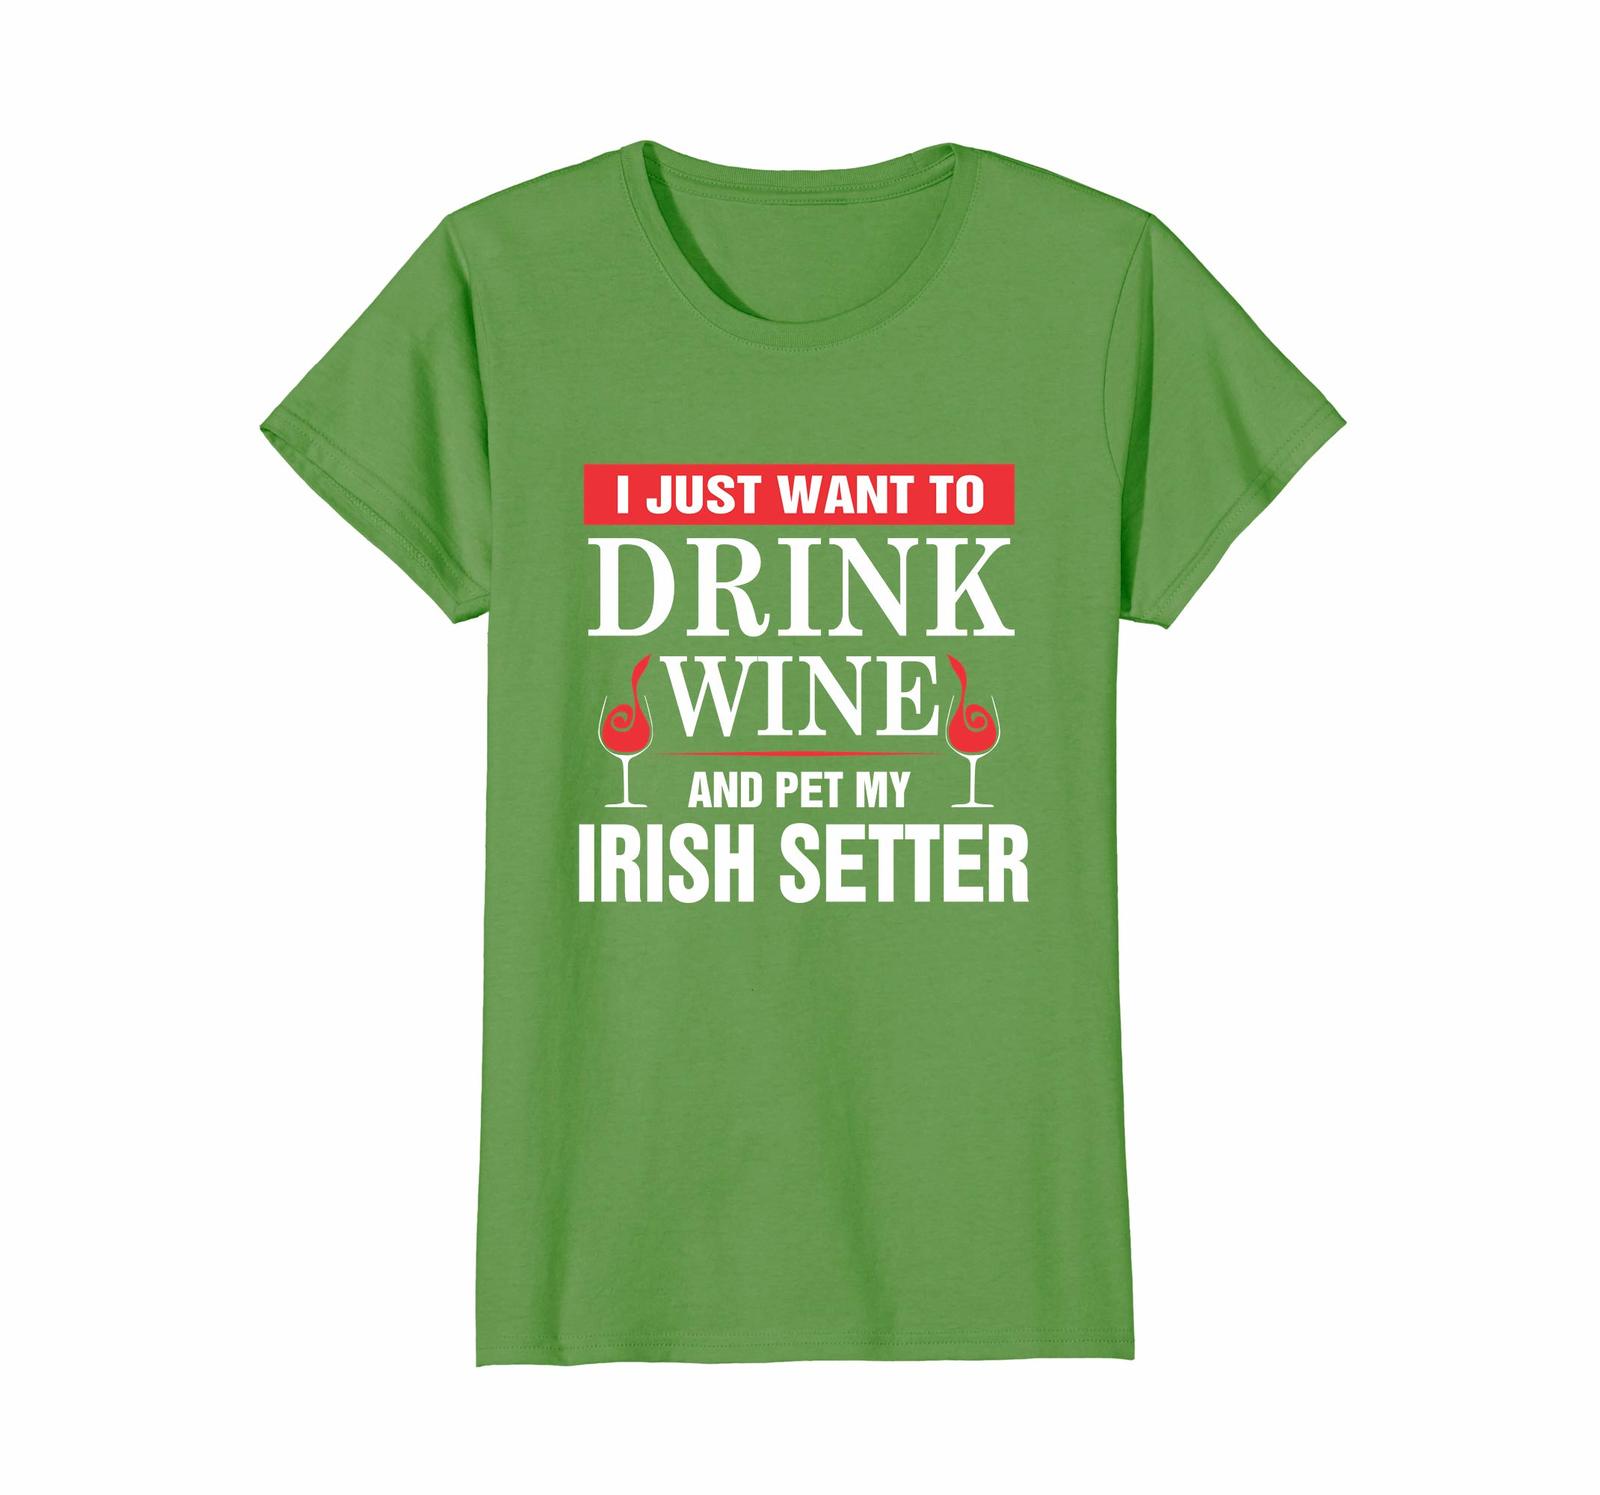 Dog Fashion - I Just Want To Drink Wine And My Irish Setter T-shirt Wowen